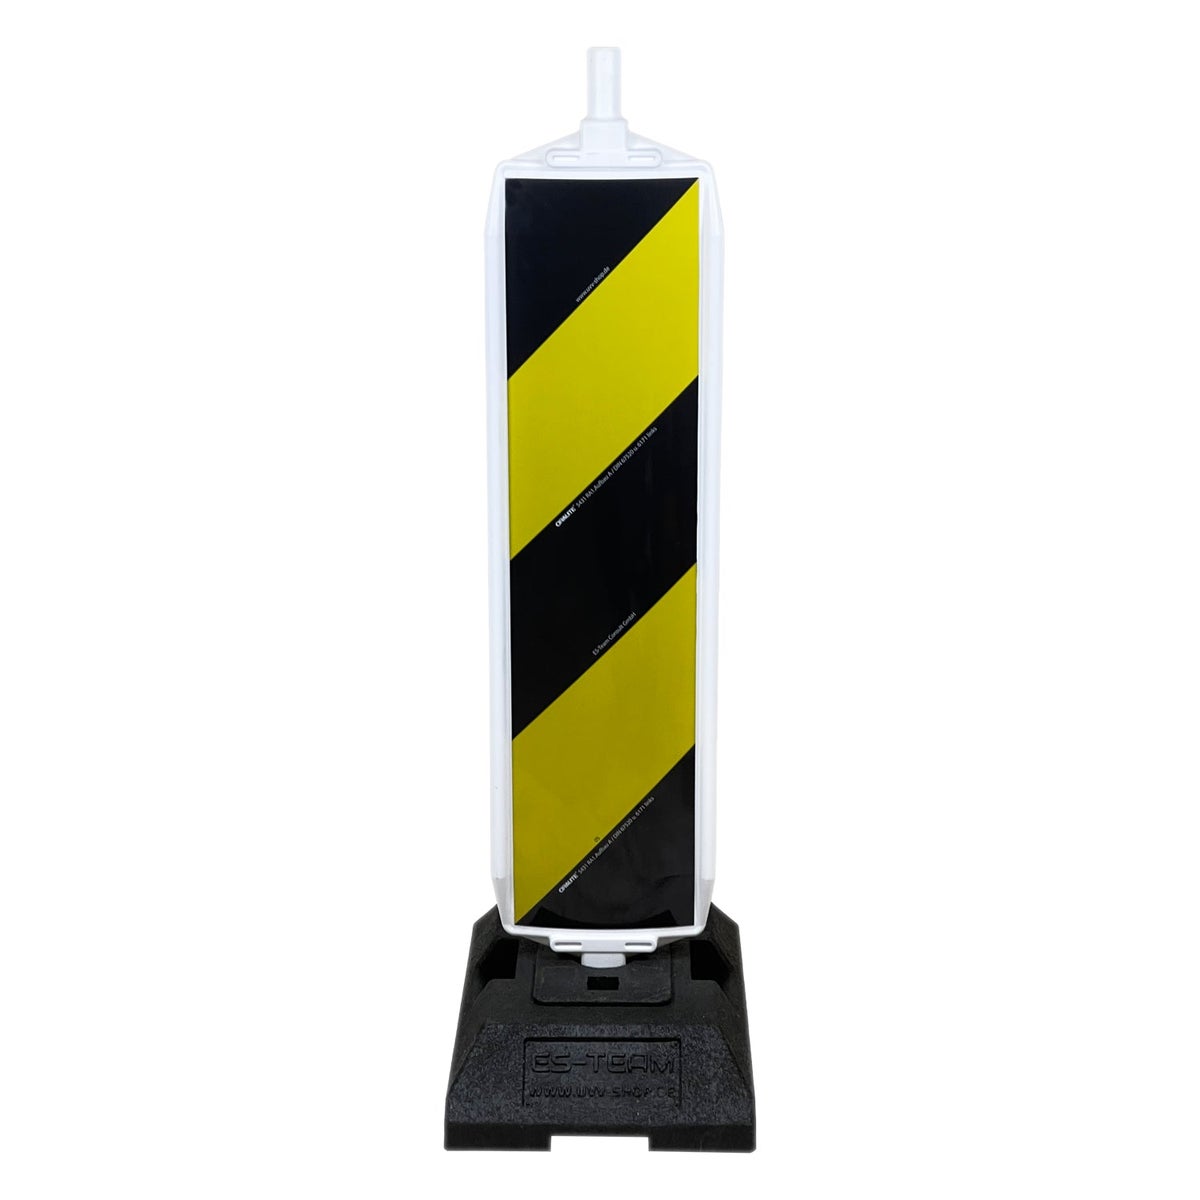 UvV Leitbake Fußplatte (18 / 30 kg) Baustelle rot/weiß oder Lager gelb, schwarz / RA1 schwarz / gelb / K0 (18 kg) / ohne Baustellenleuchte